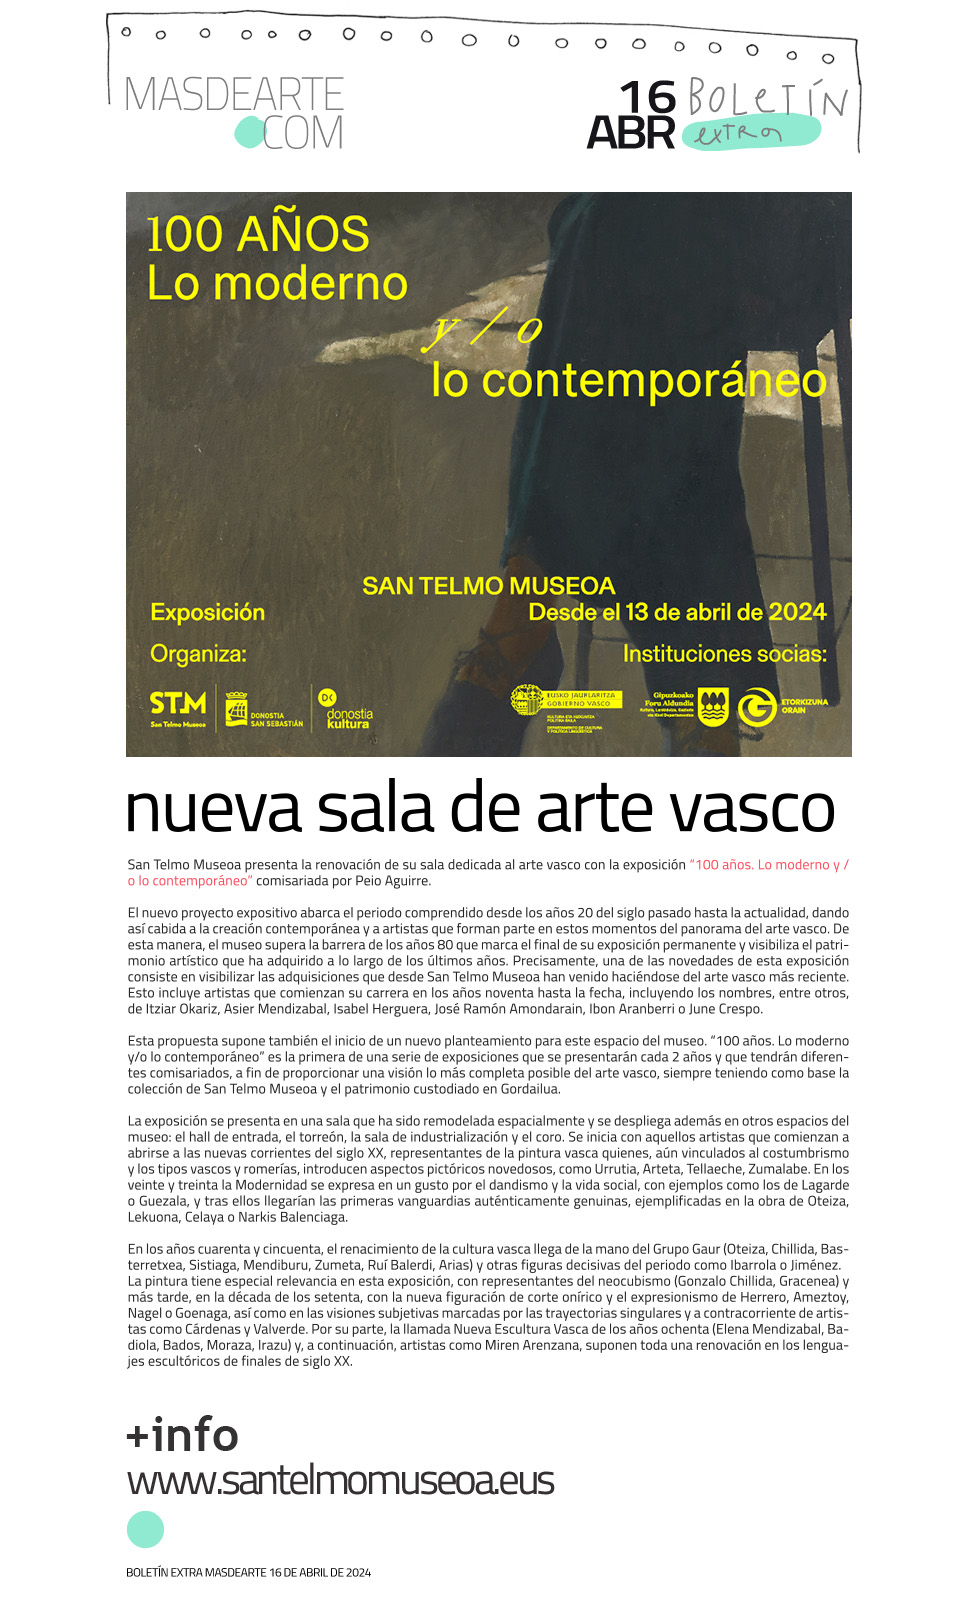 Extra masdearte: San Telmo Museoa renueva su sala de arte vasco e incorpora la creación más actual